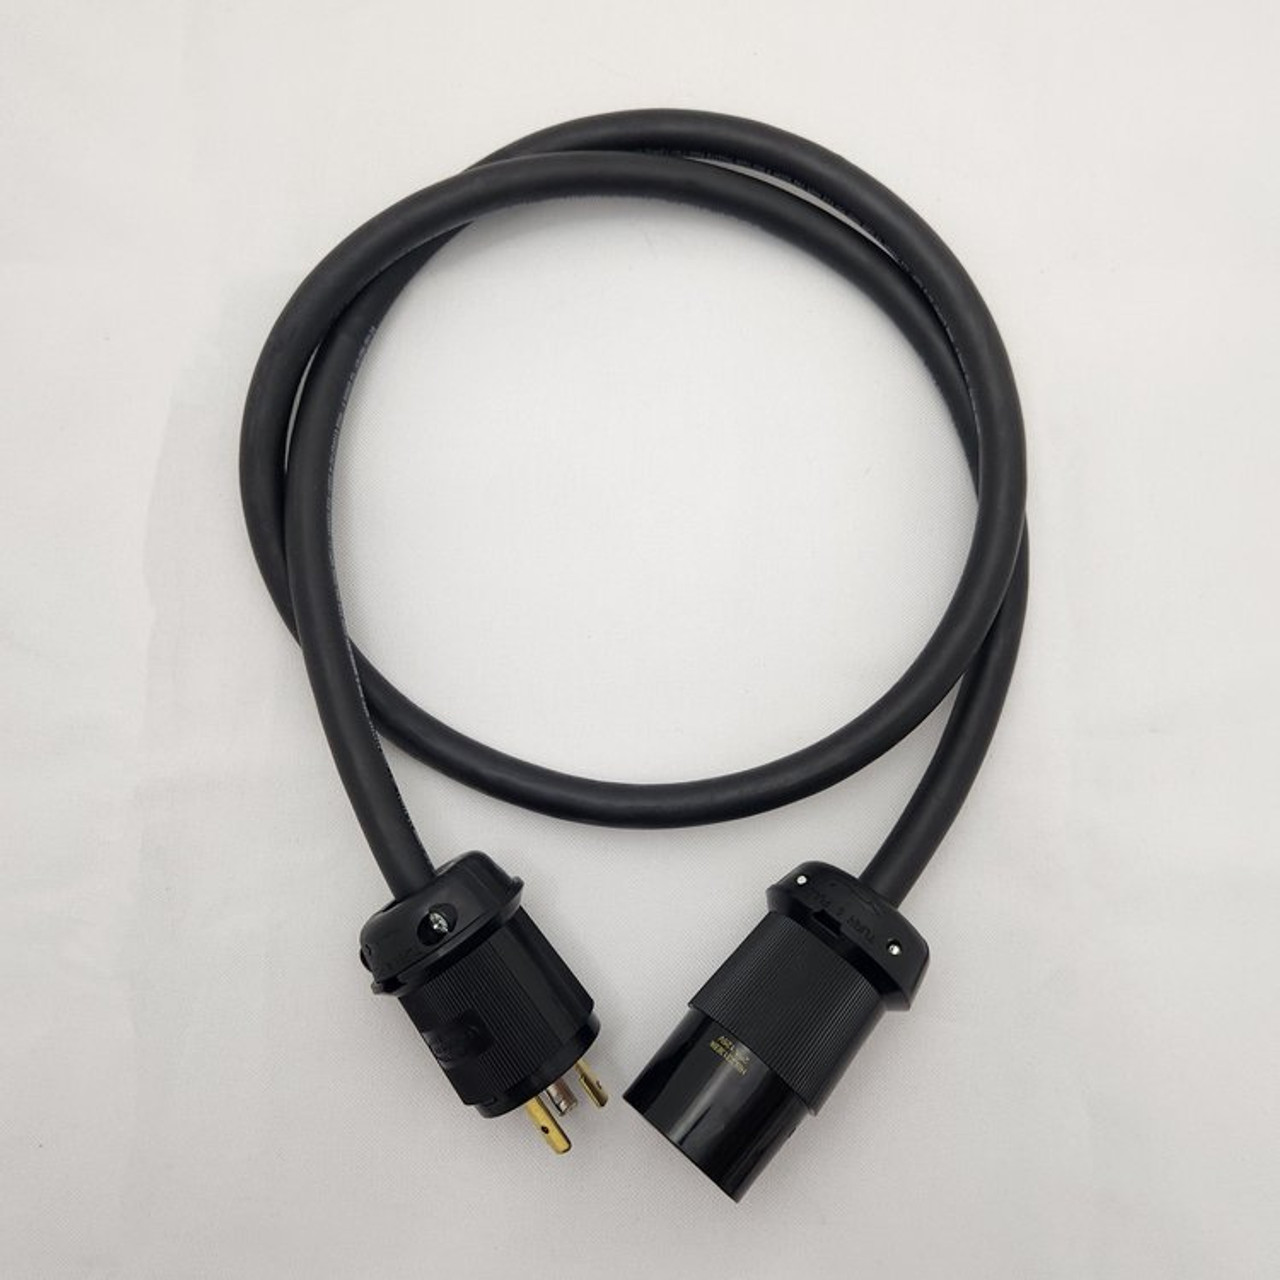 PlugsPlus 75 Foot Twist Lock L5-20 Extension Cable